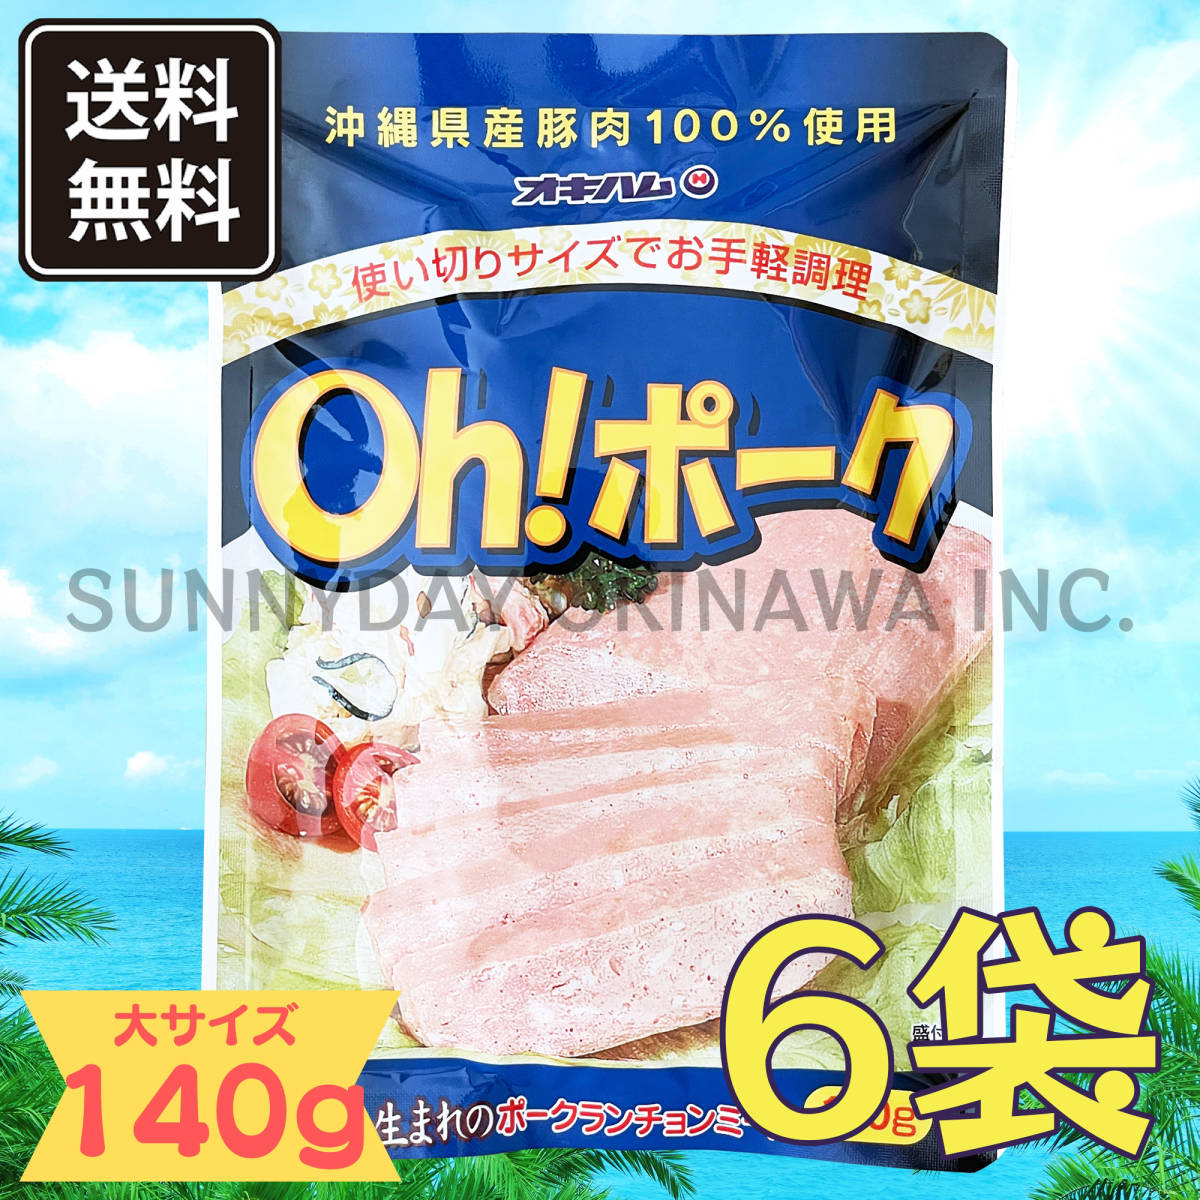 Oh! ポーク (大) 140g 6袋 沖縄県産豚肉100%使用 オキハム ポークランチョンミート お土産 お取り寄せ_画像1